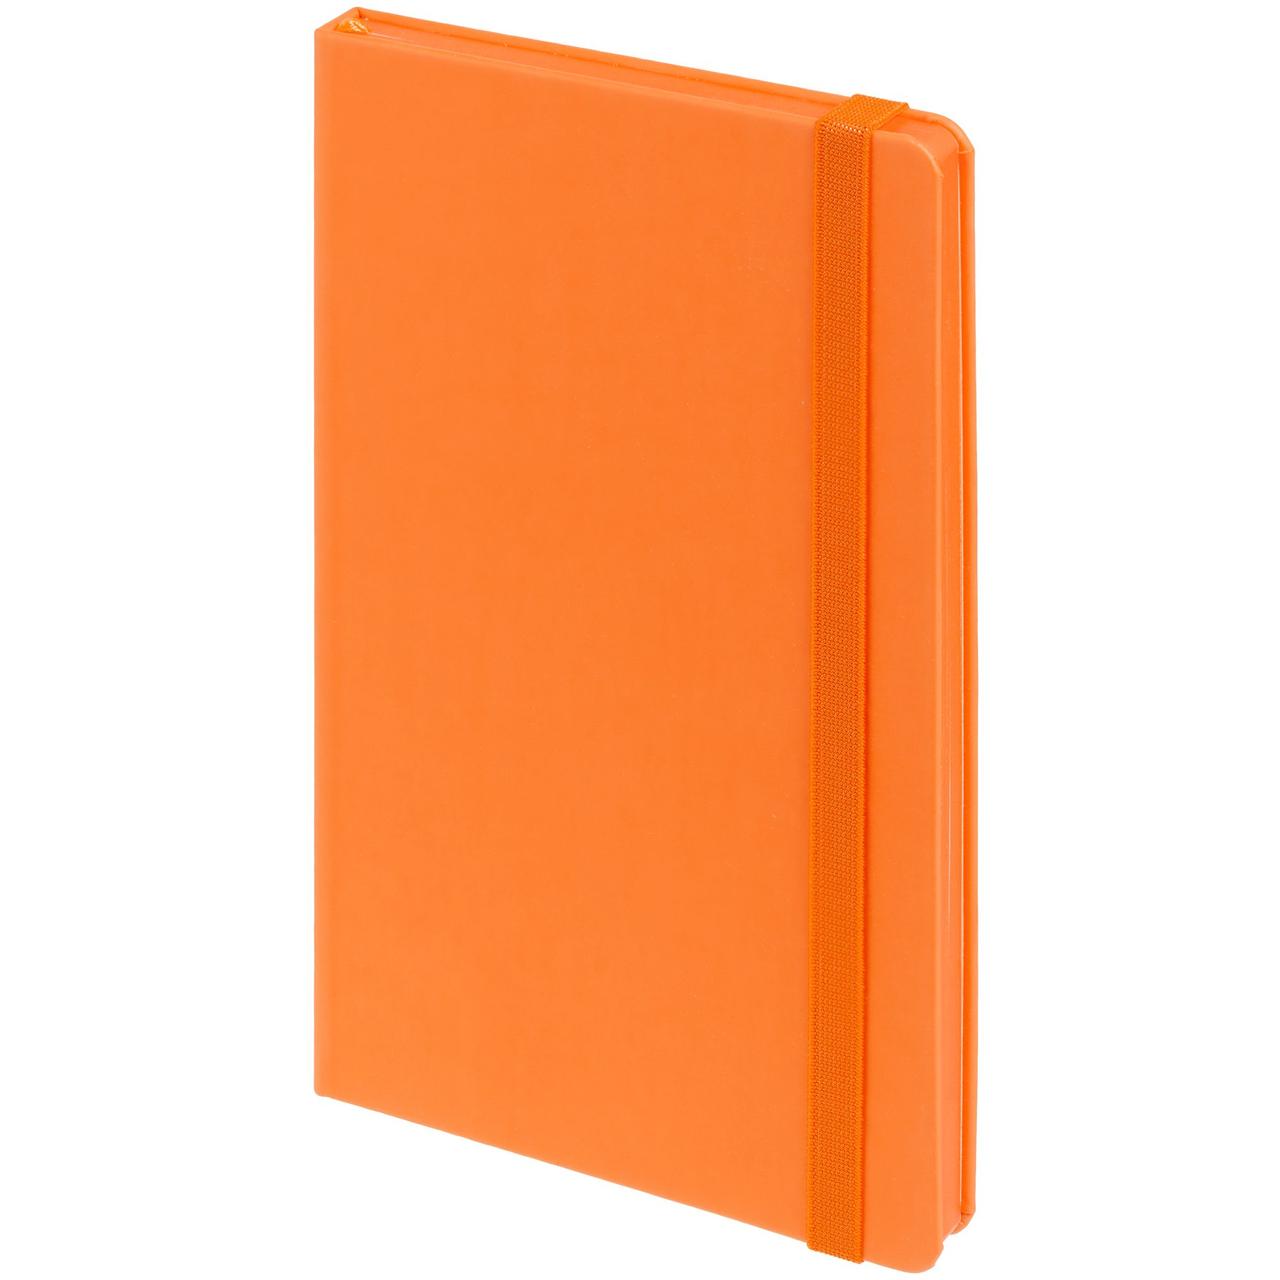 Блокнот Shall, оранжевый (артикул 17009.20)